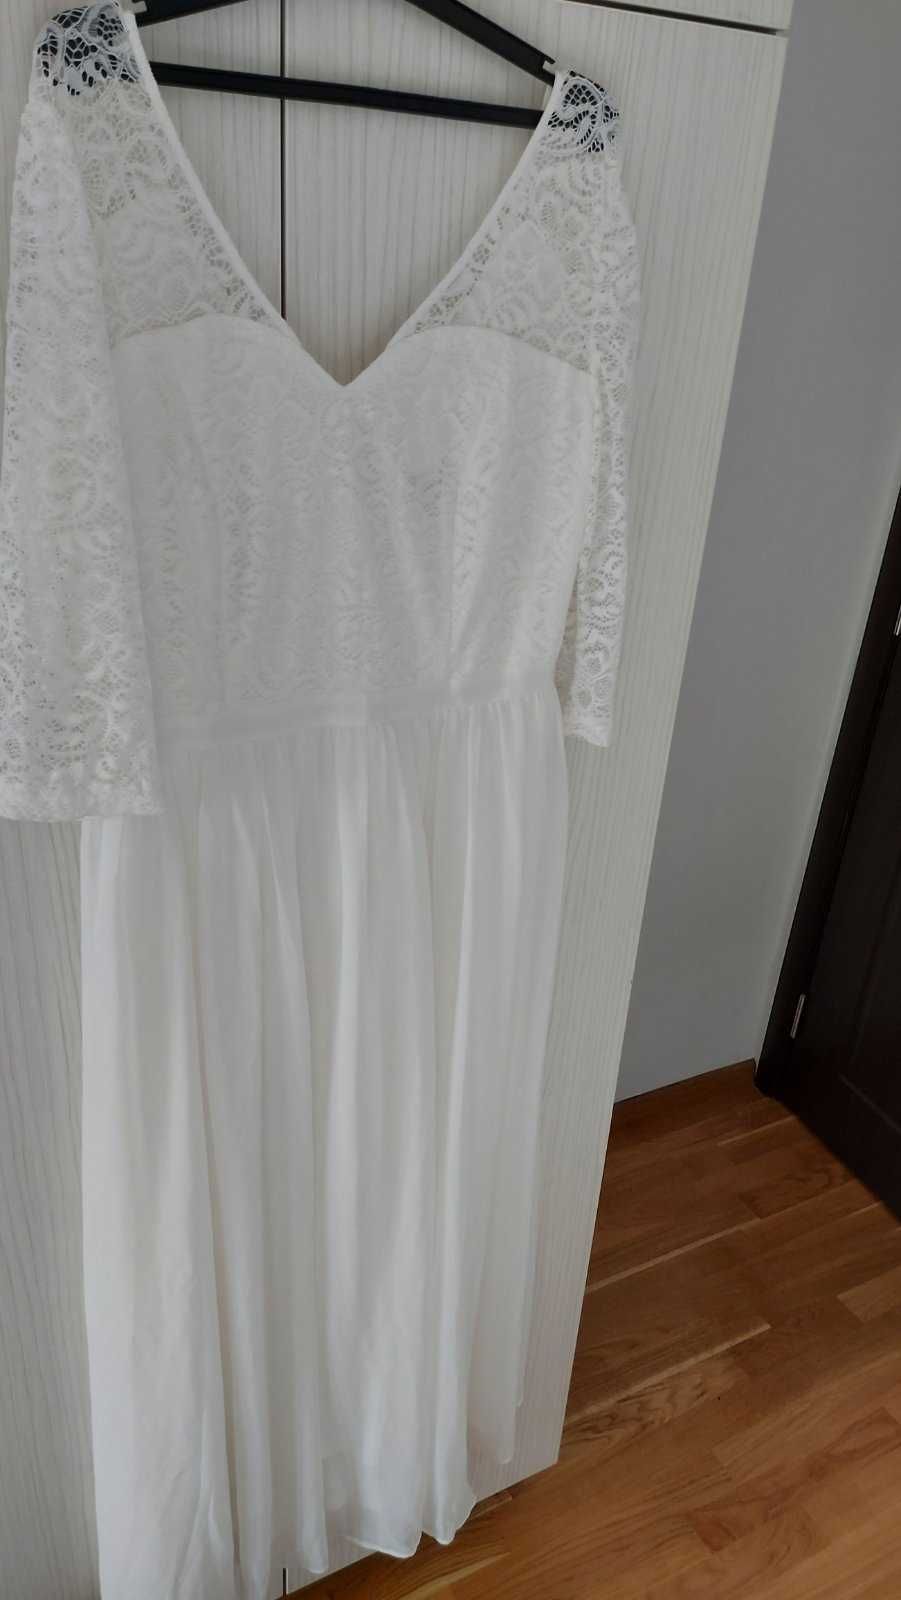 Елегантна булченска рокля, комплект с обувки, бяла дълга рокля и още